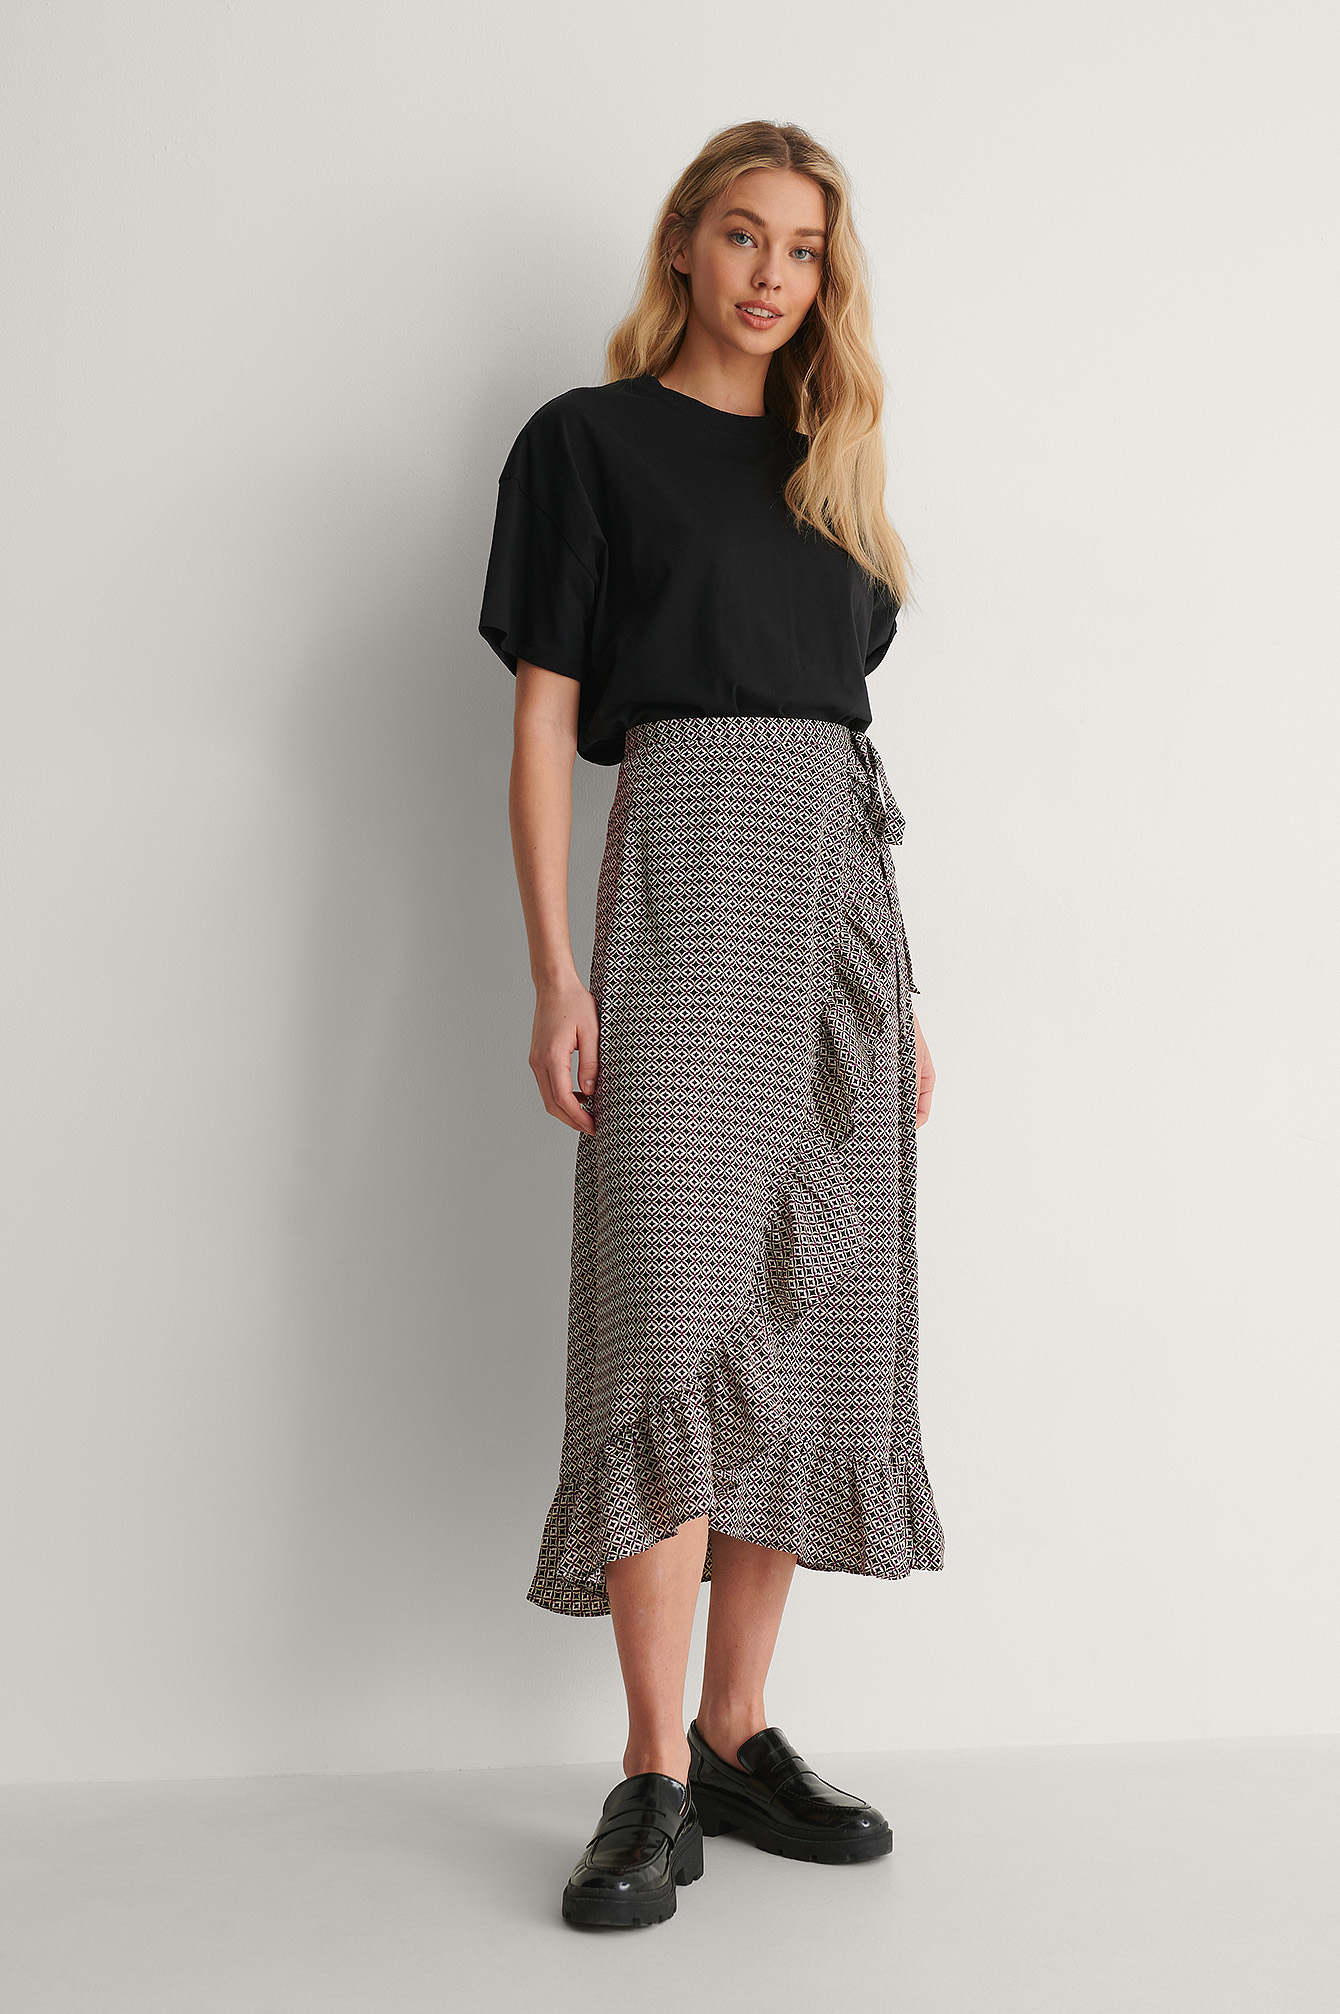 Multi Colour Print Frill Overlap Skirt